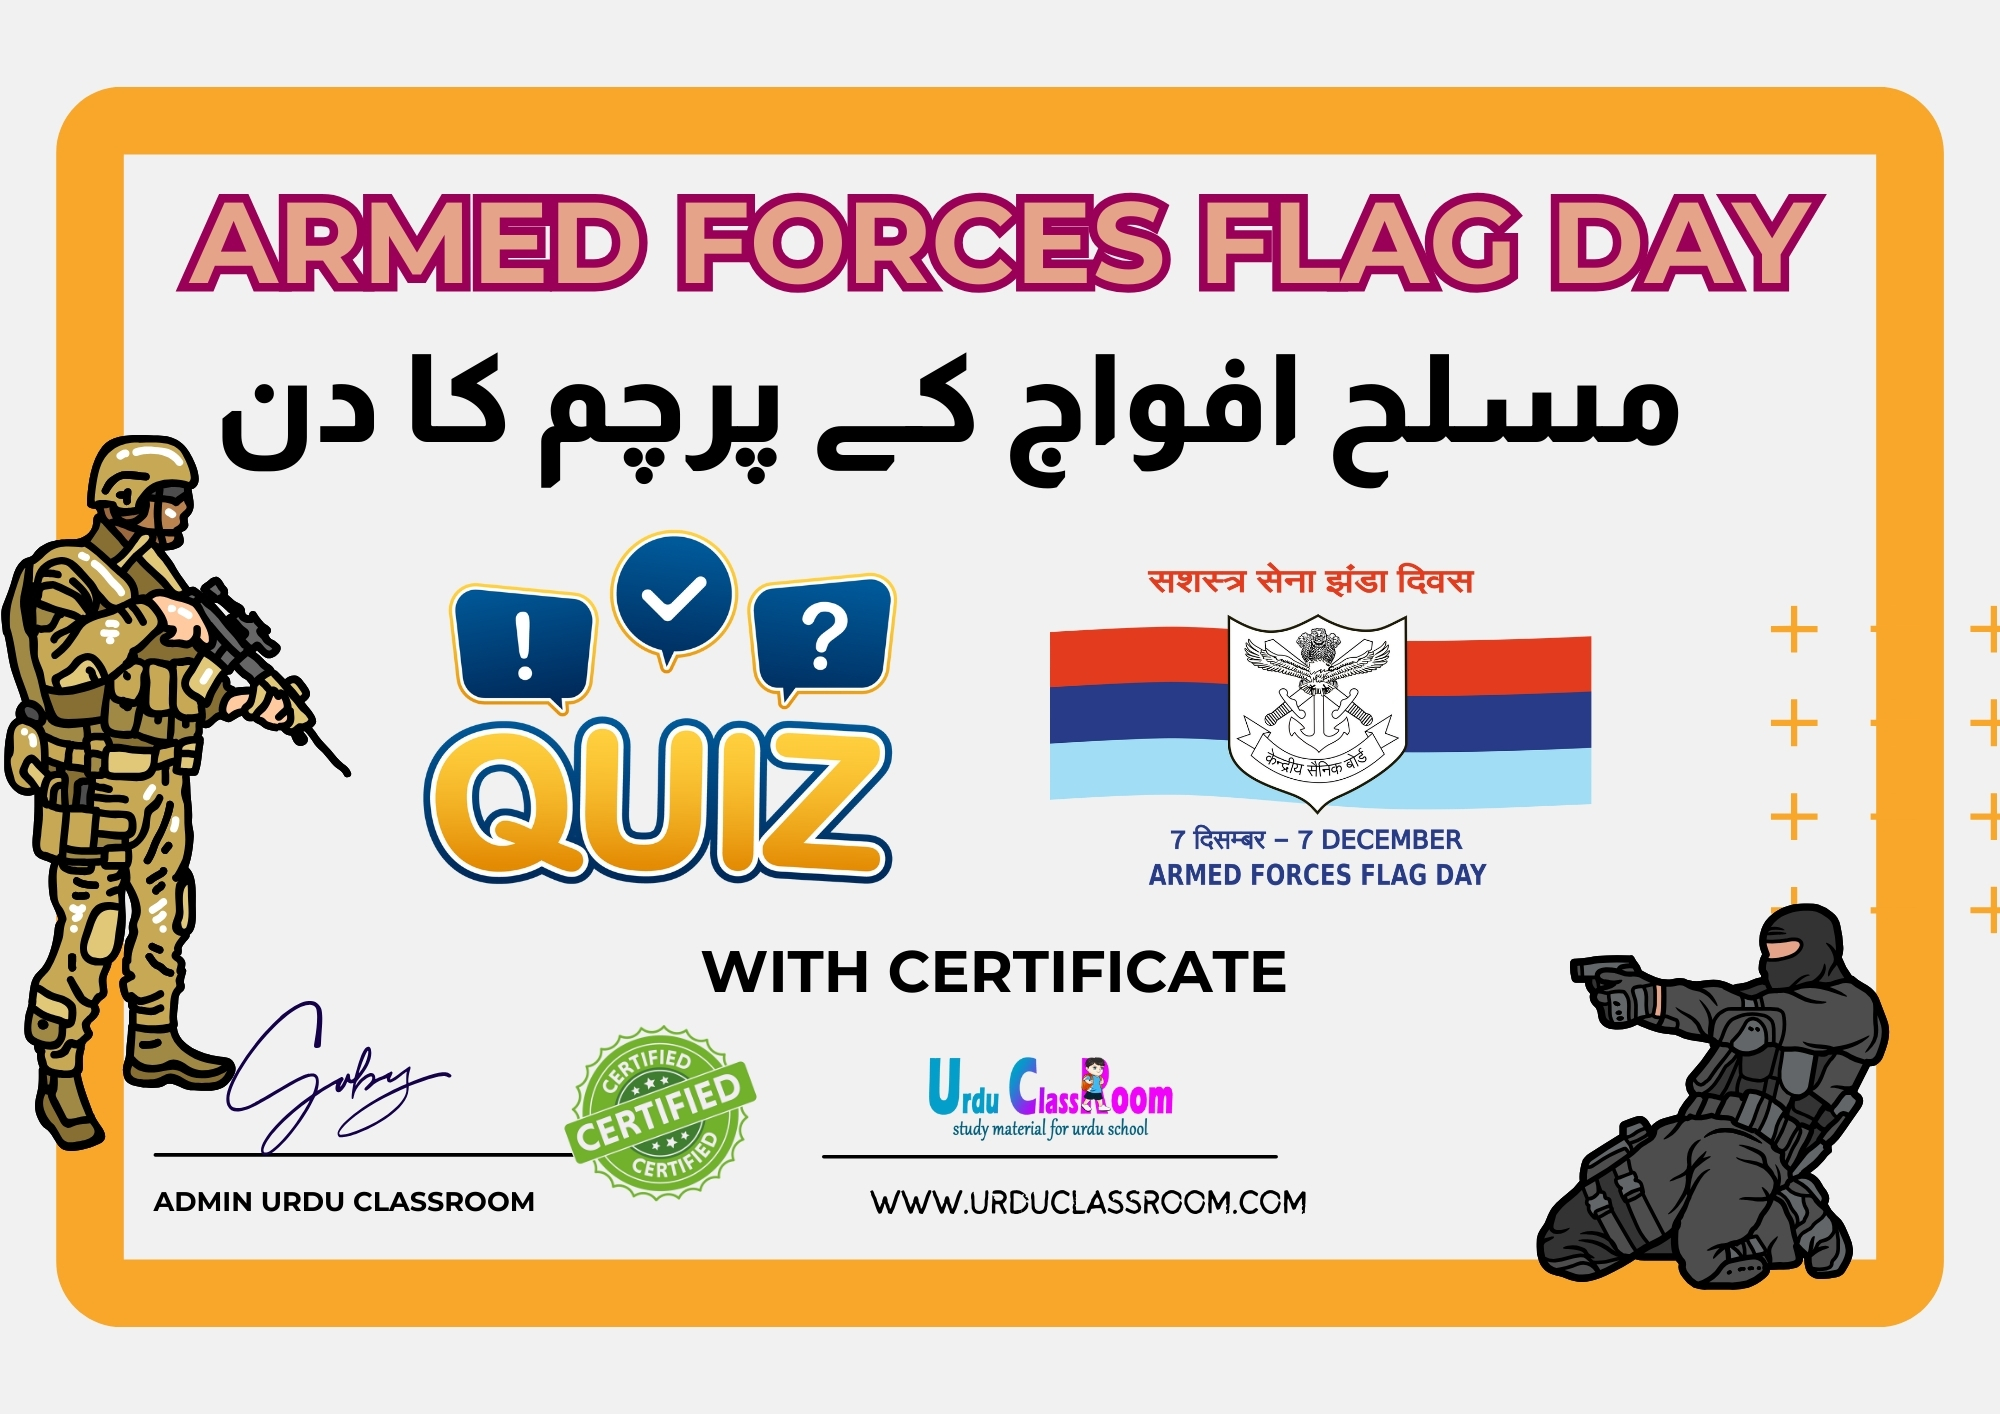 مسلح افواج پرچم دن|Armed Forces Flag Day; urdu quiz with certificate